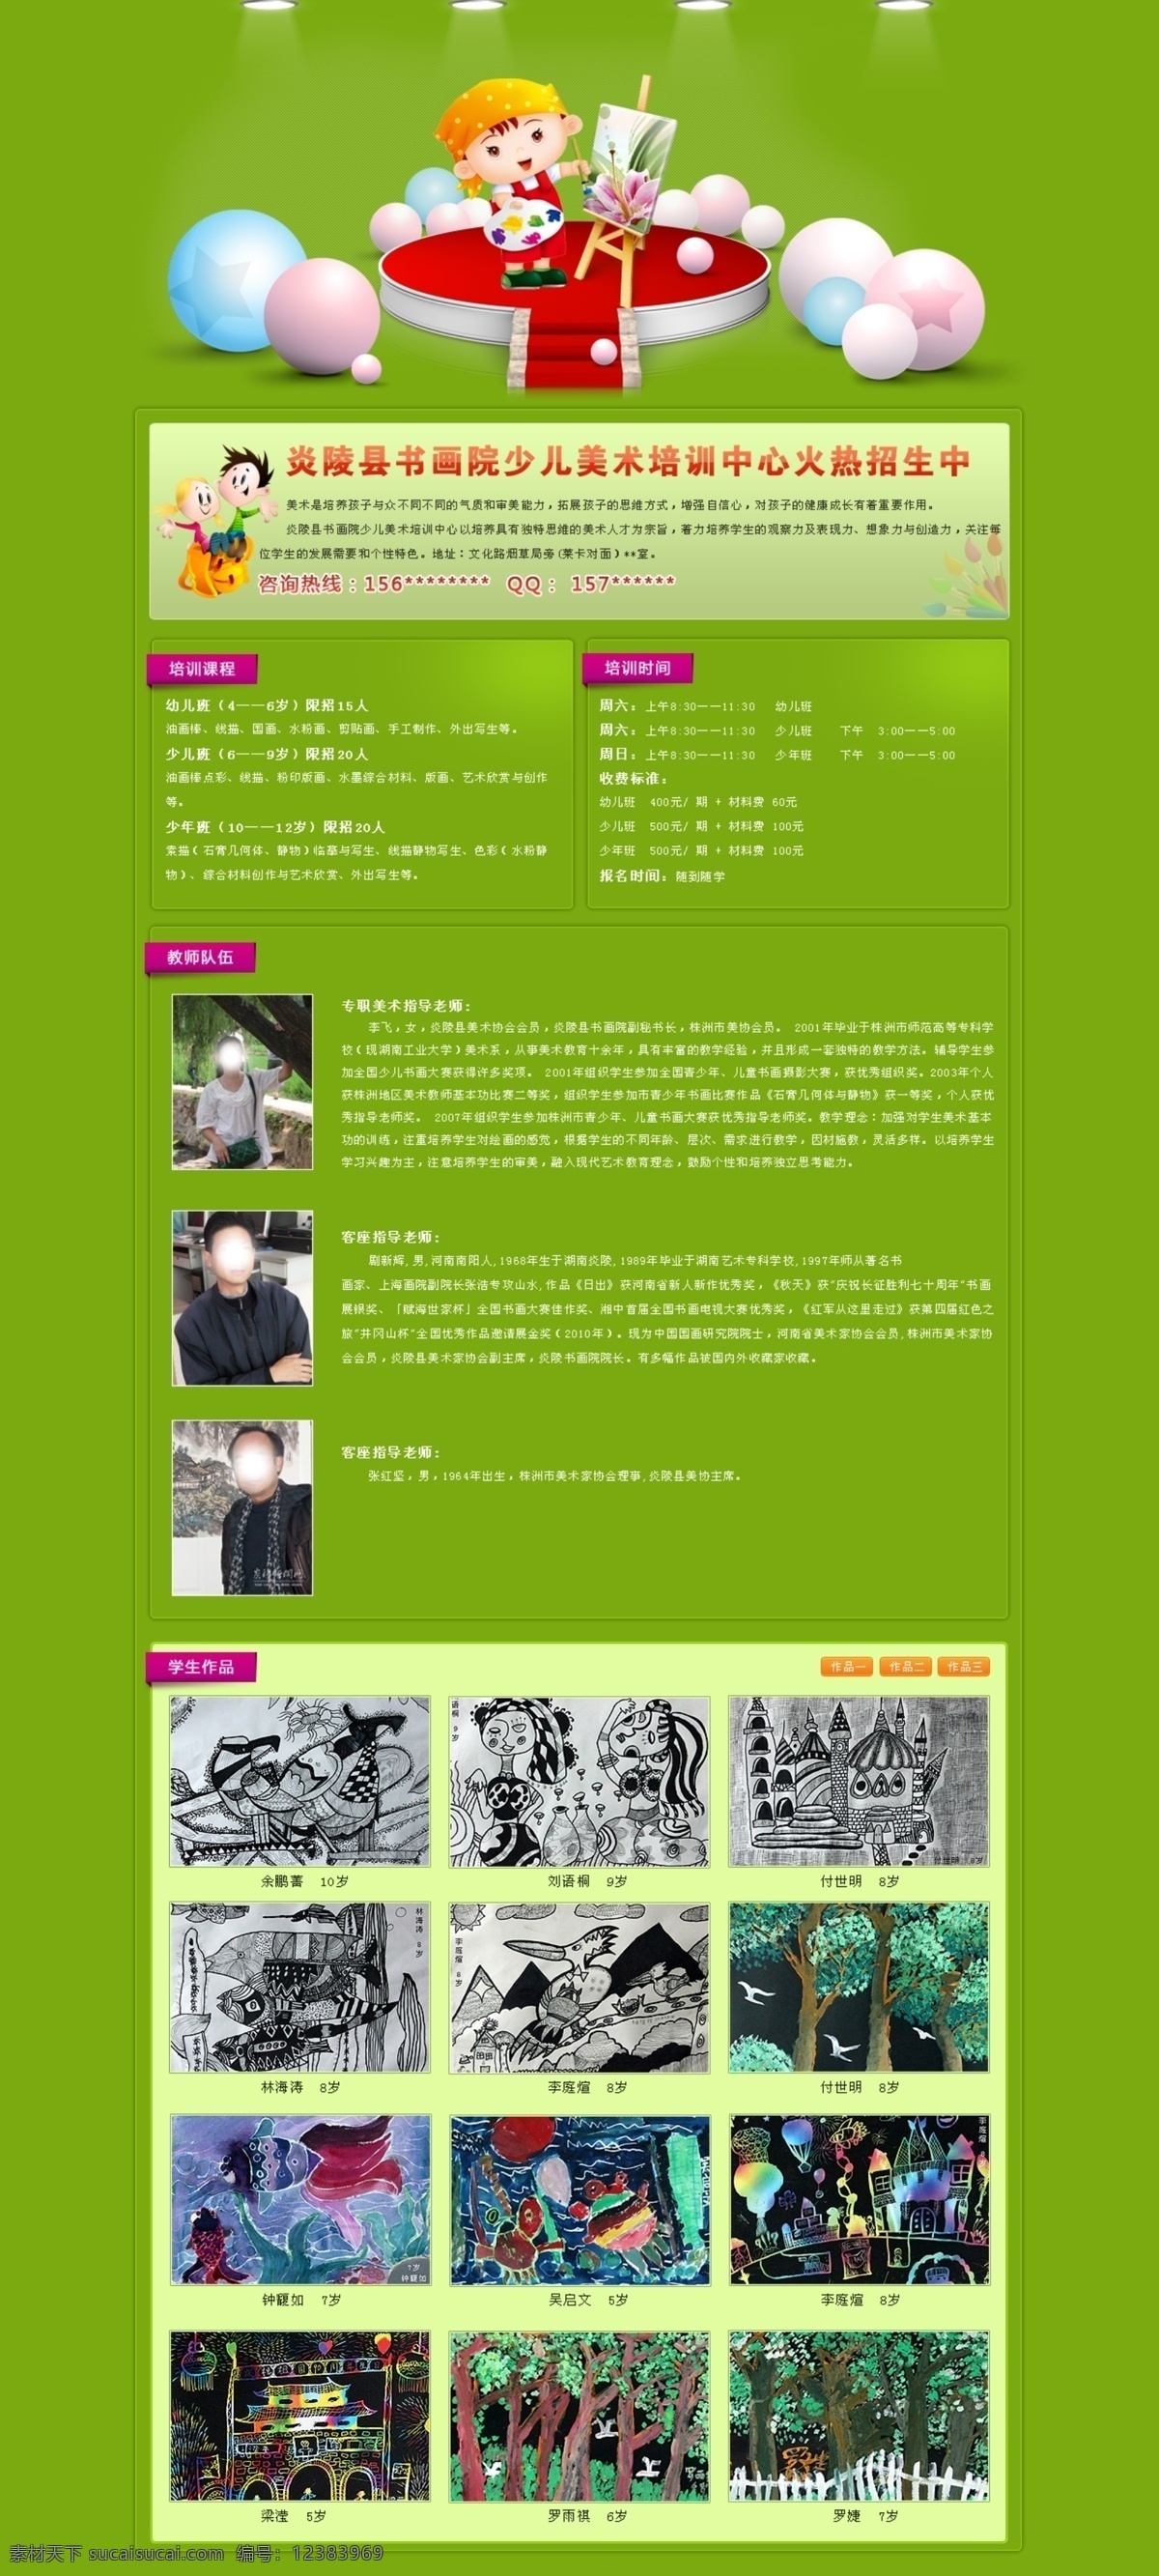 网页模板 源文件 招生宣传 中文模版 美术 招生 广告 网站 模板下载 美术招生广告 展板 学校展板设计